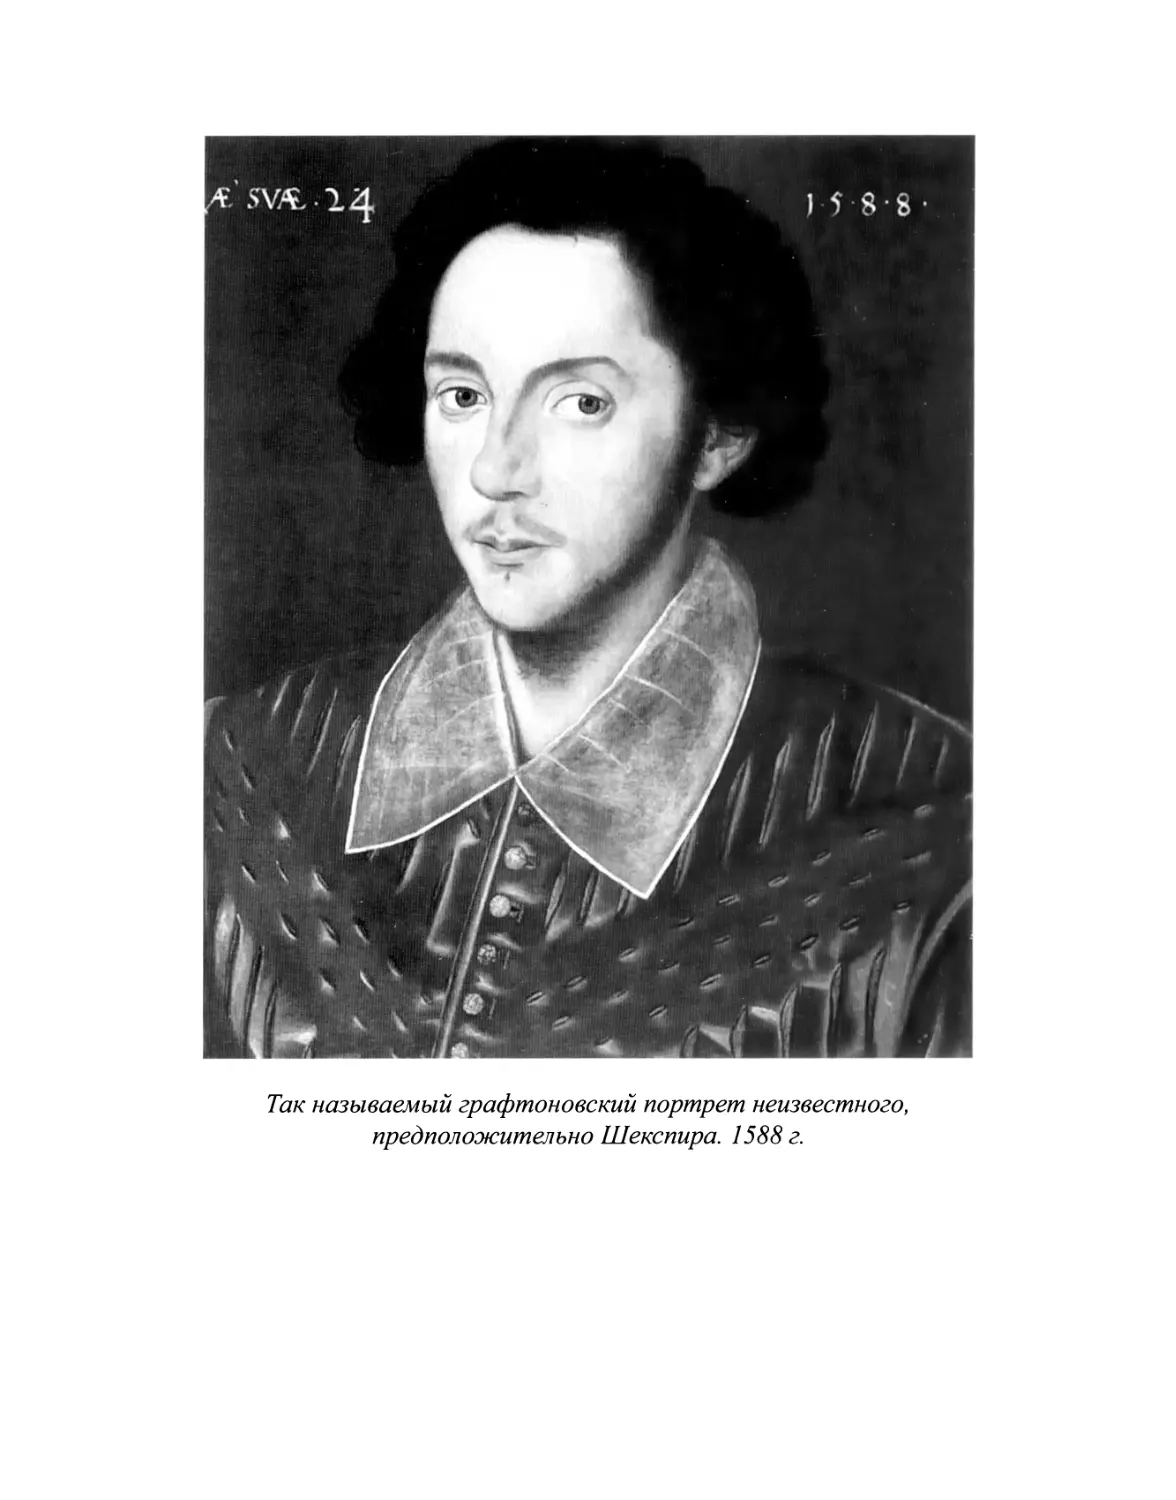 Шекспир У. Пустые хлопоты любви - 2020
Вклейка. Так называемый графтоновский портрет неизвестного, предположительно Шекспира. 1588 г.